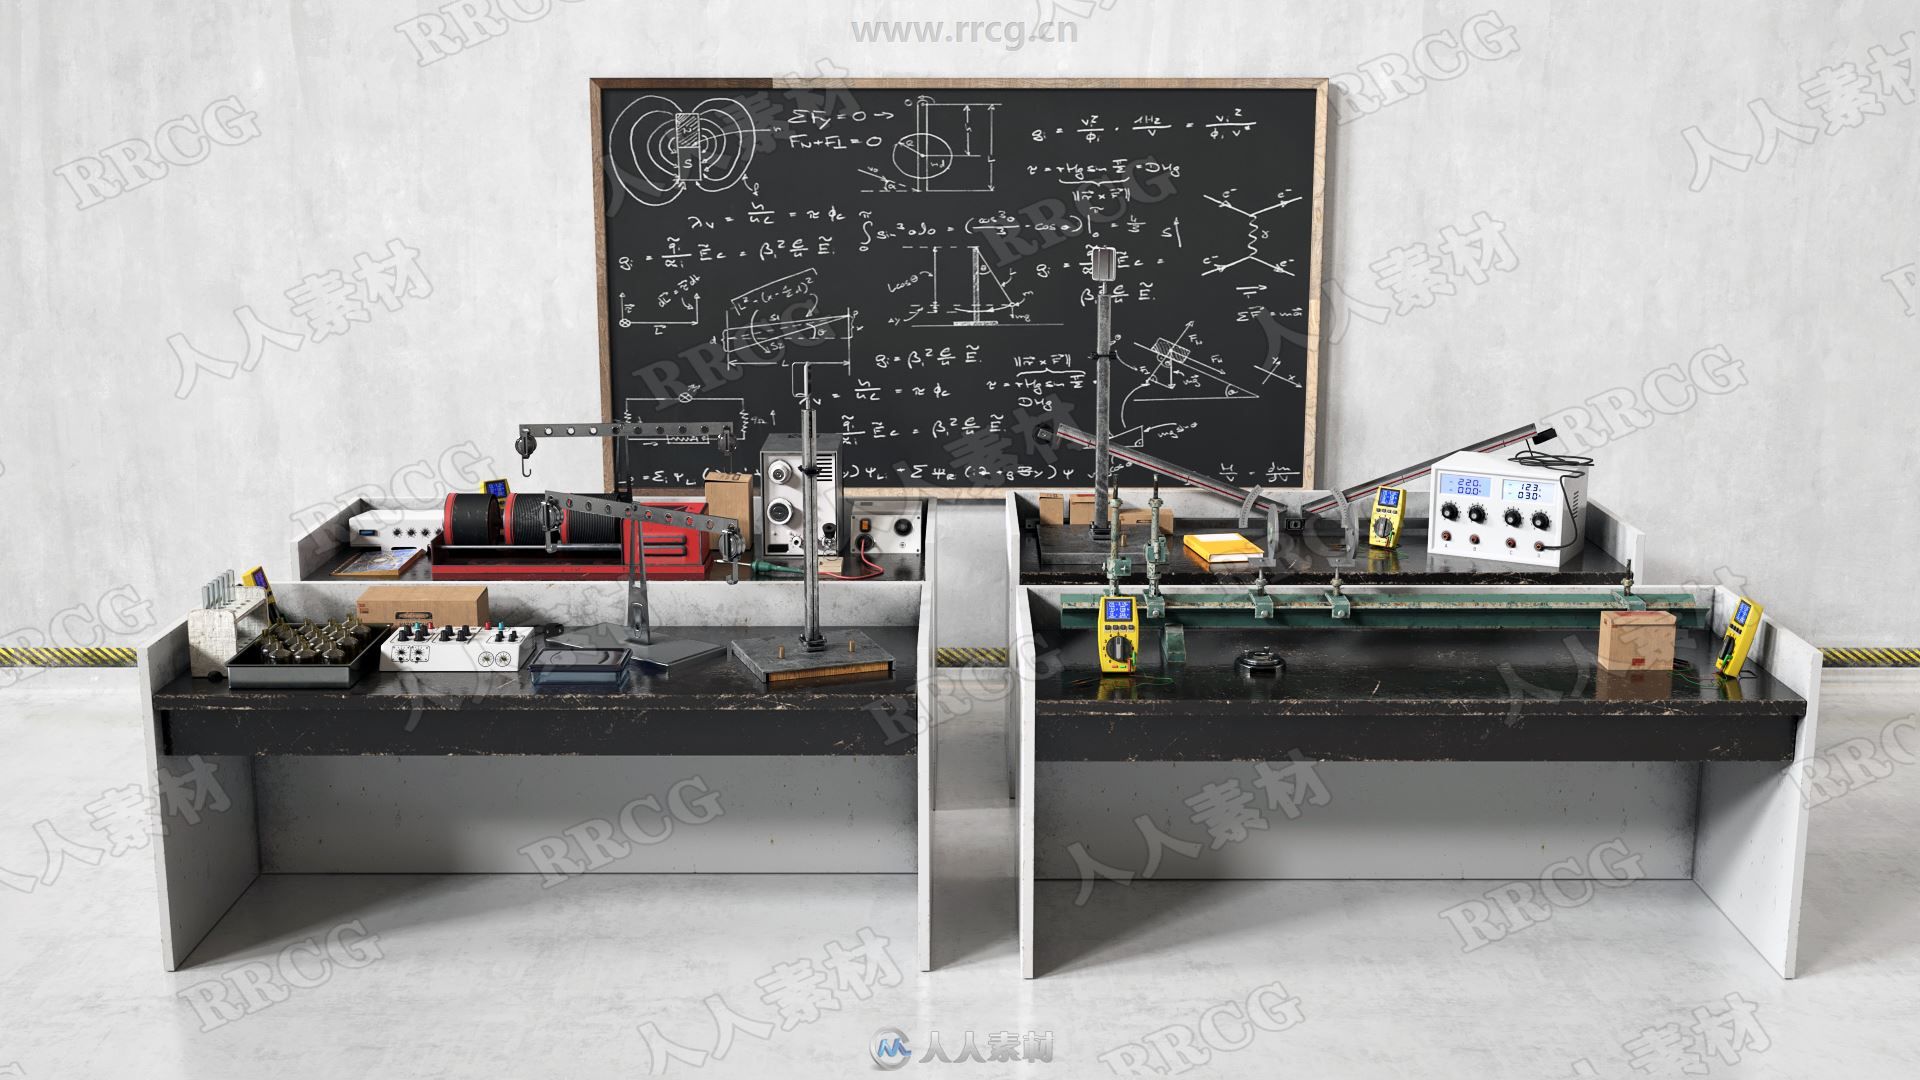 21组高品质物理化学生物实验室教师设备相关3D模型合集 Evermotion Archmodels第228季